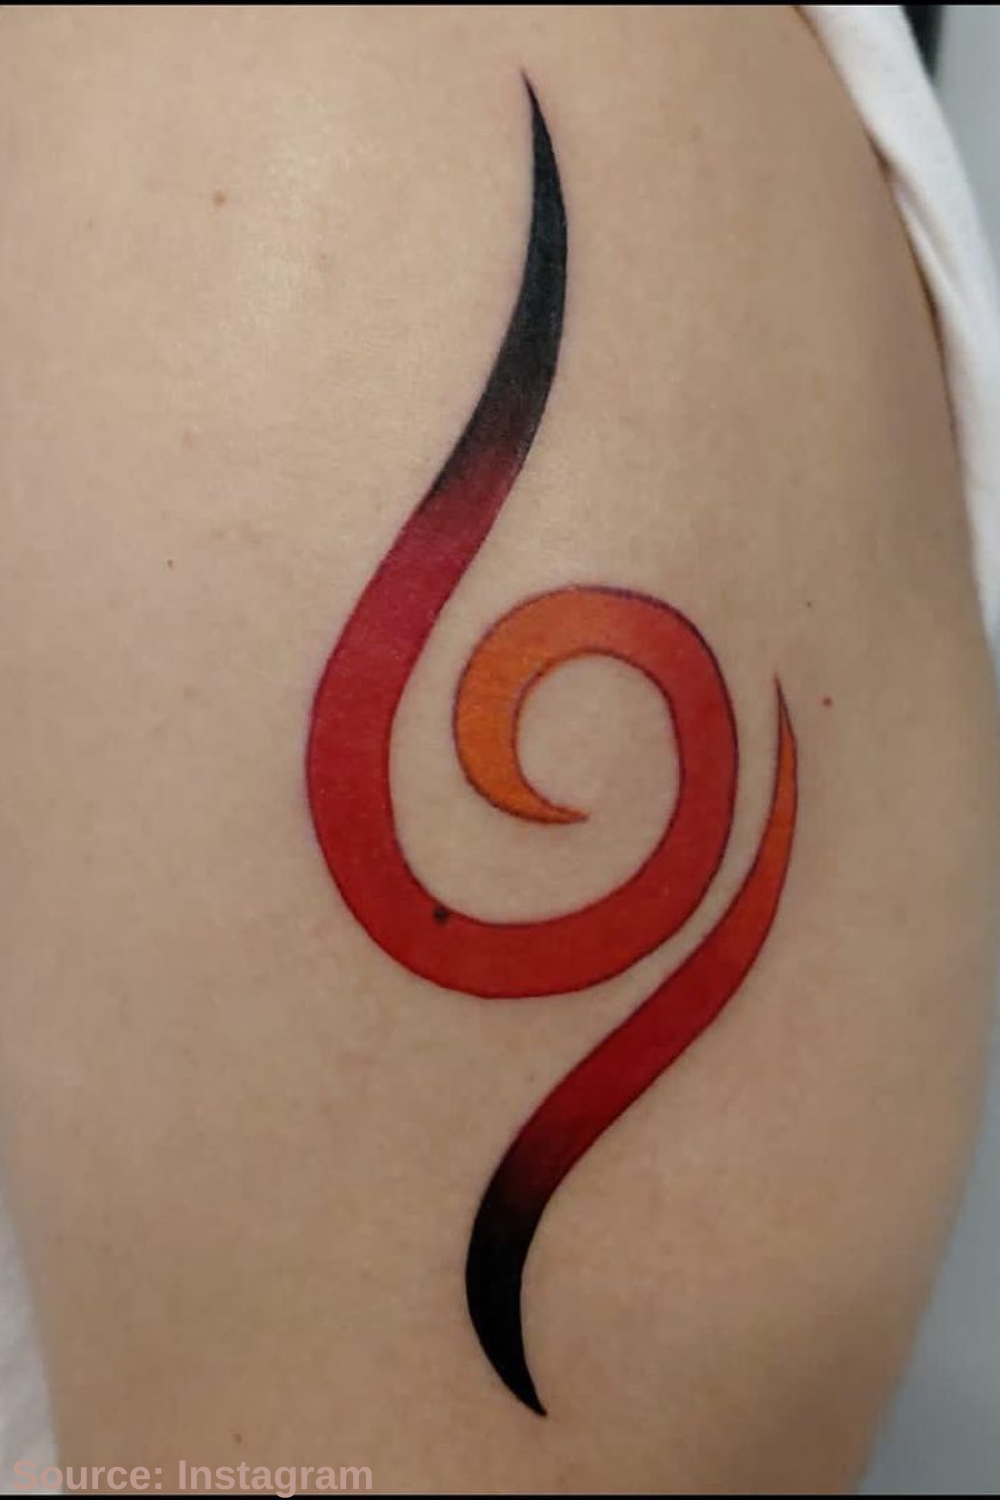 Naruto tattoo